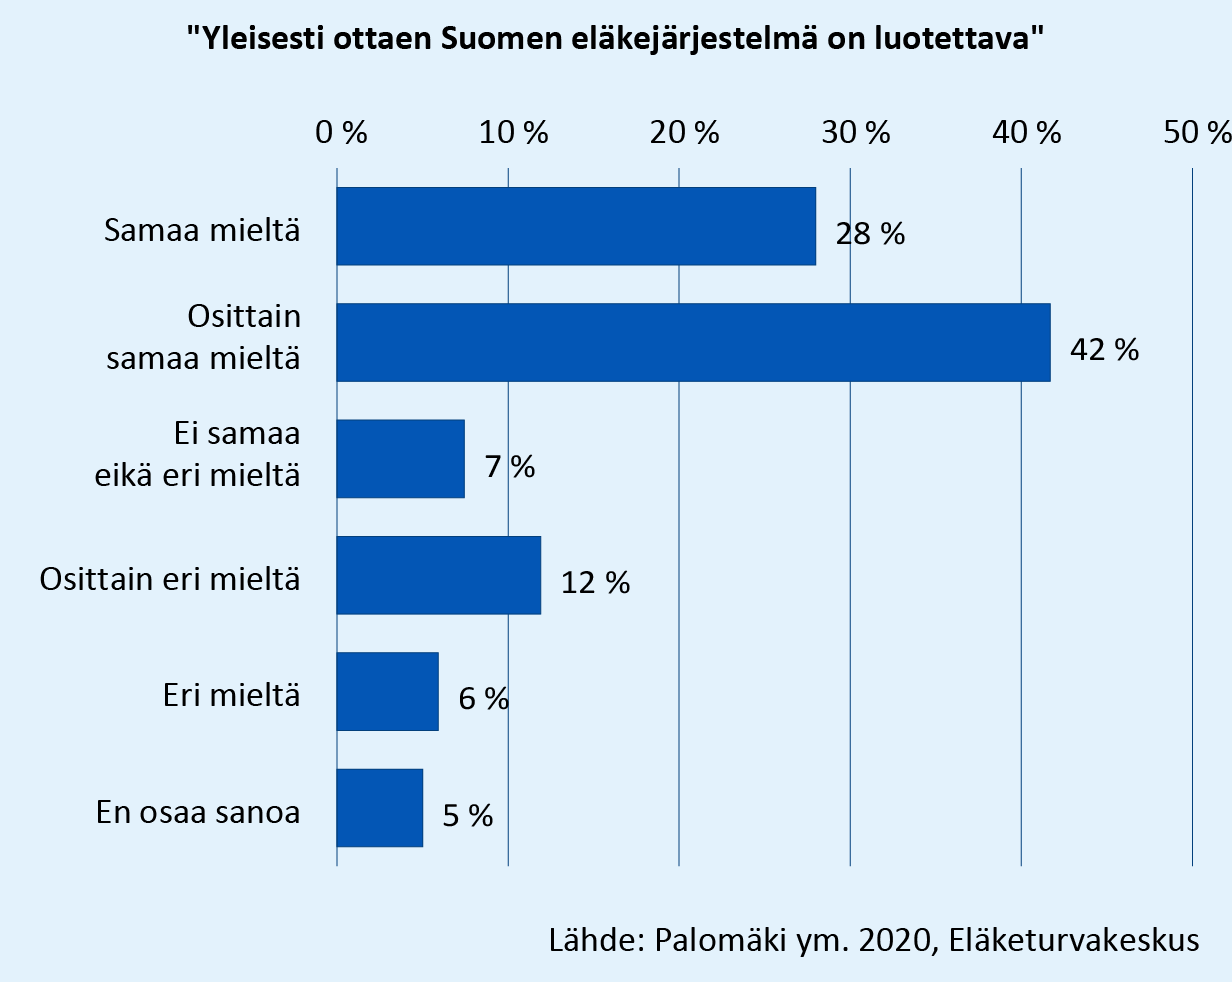 Vastaukset kysymykseen: Yleisesti ottaen Suomen eläkejärjestelmä on luotettava. Samaa ja osittain samaa mieltä oli yhteensä 70 % vastaajista. Osittain eri mieltä ja eri mieltä oli yhteensä 18 % vastaajista. Lähde: Palomäki ym. 2021, Eläketurvakeskus.